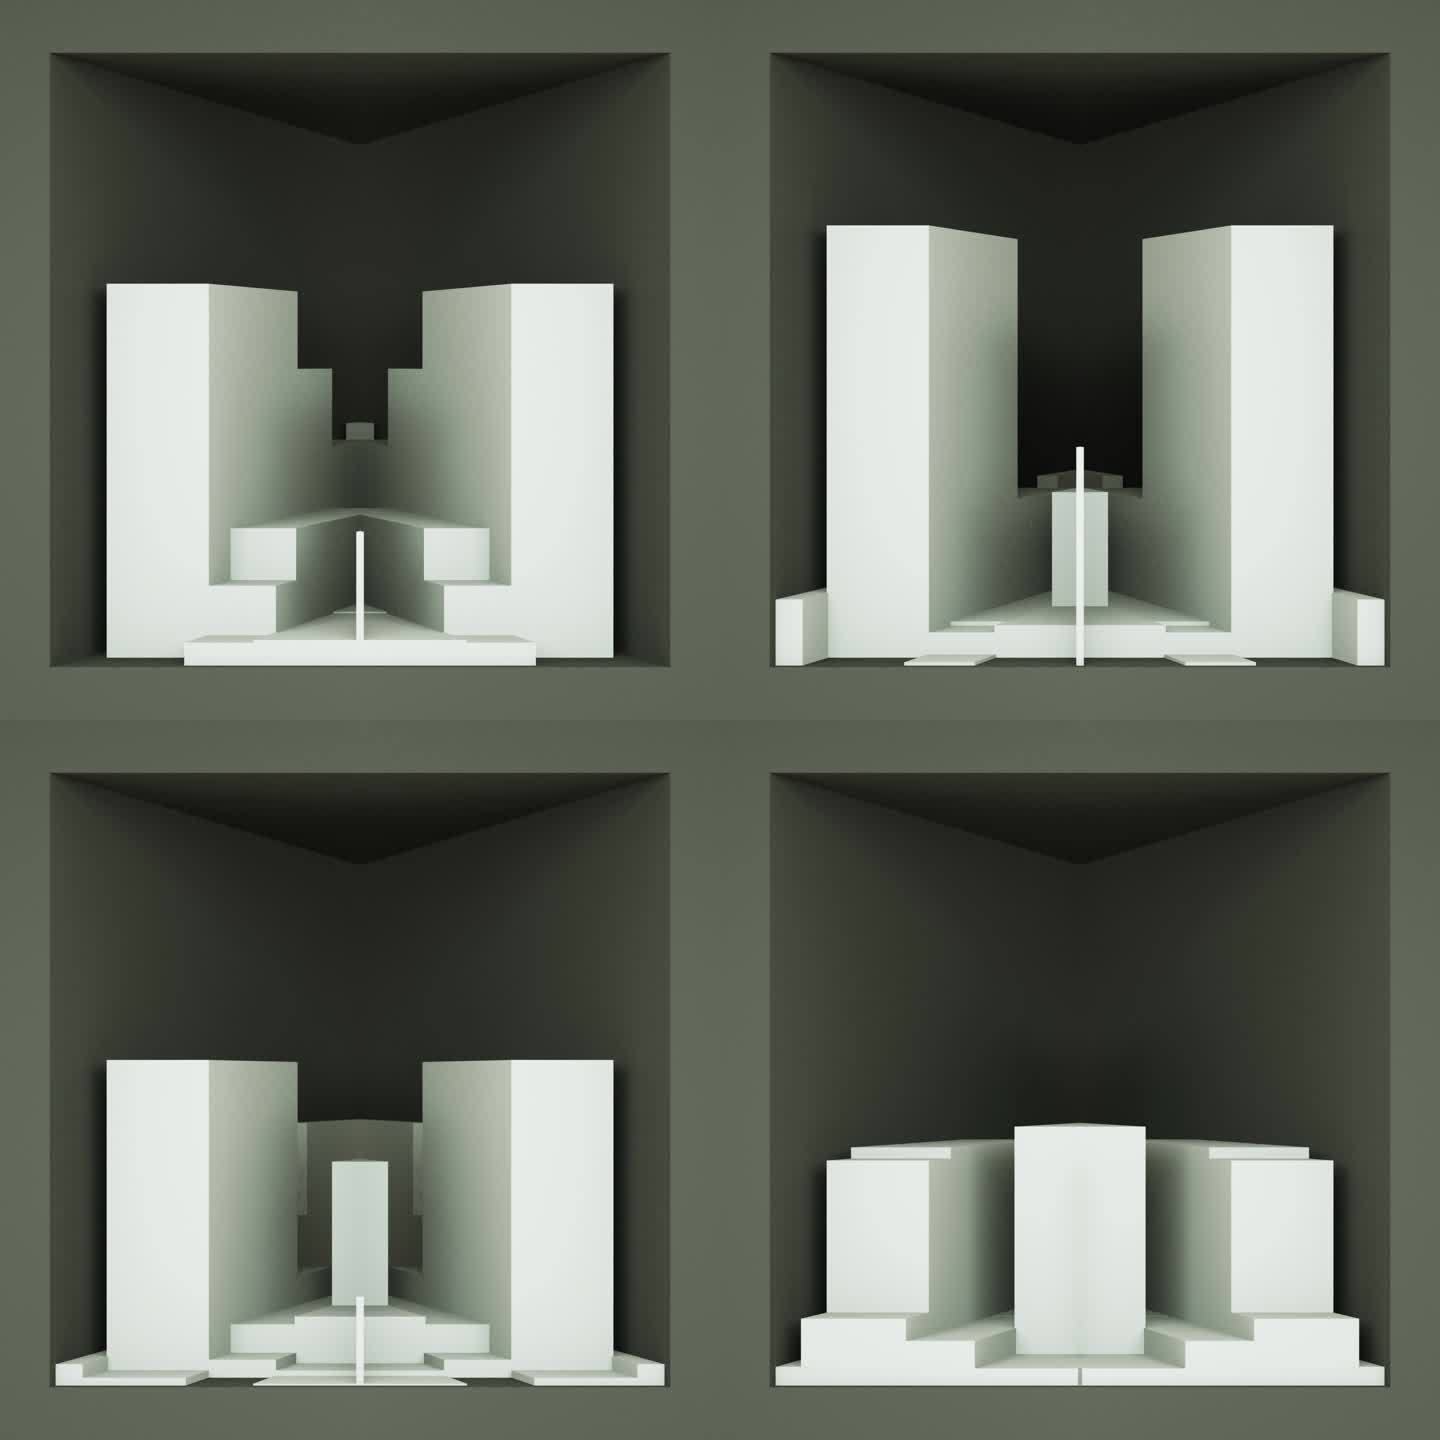 【裸眼3D】白色几何楼体概念投影立体空间